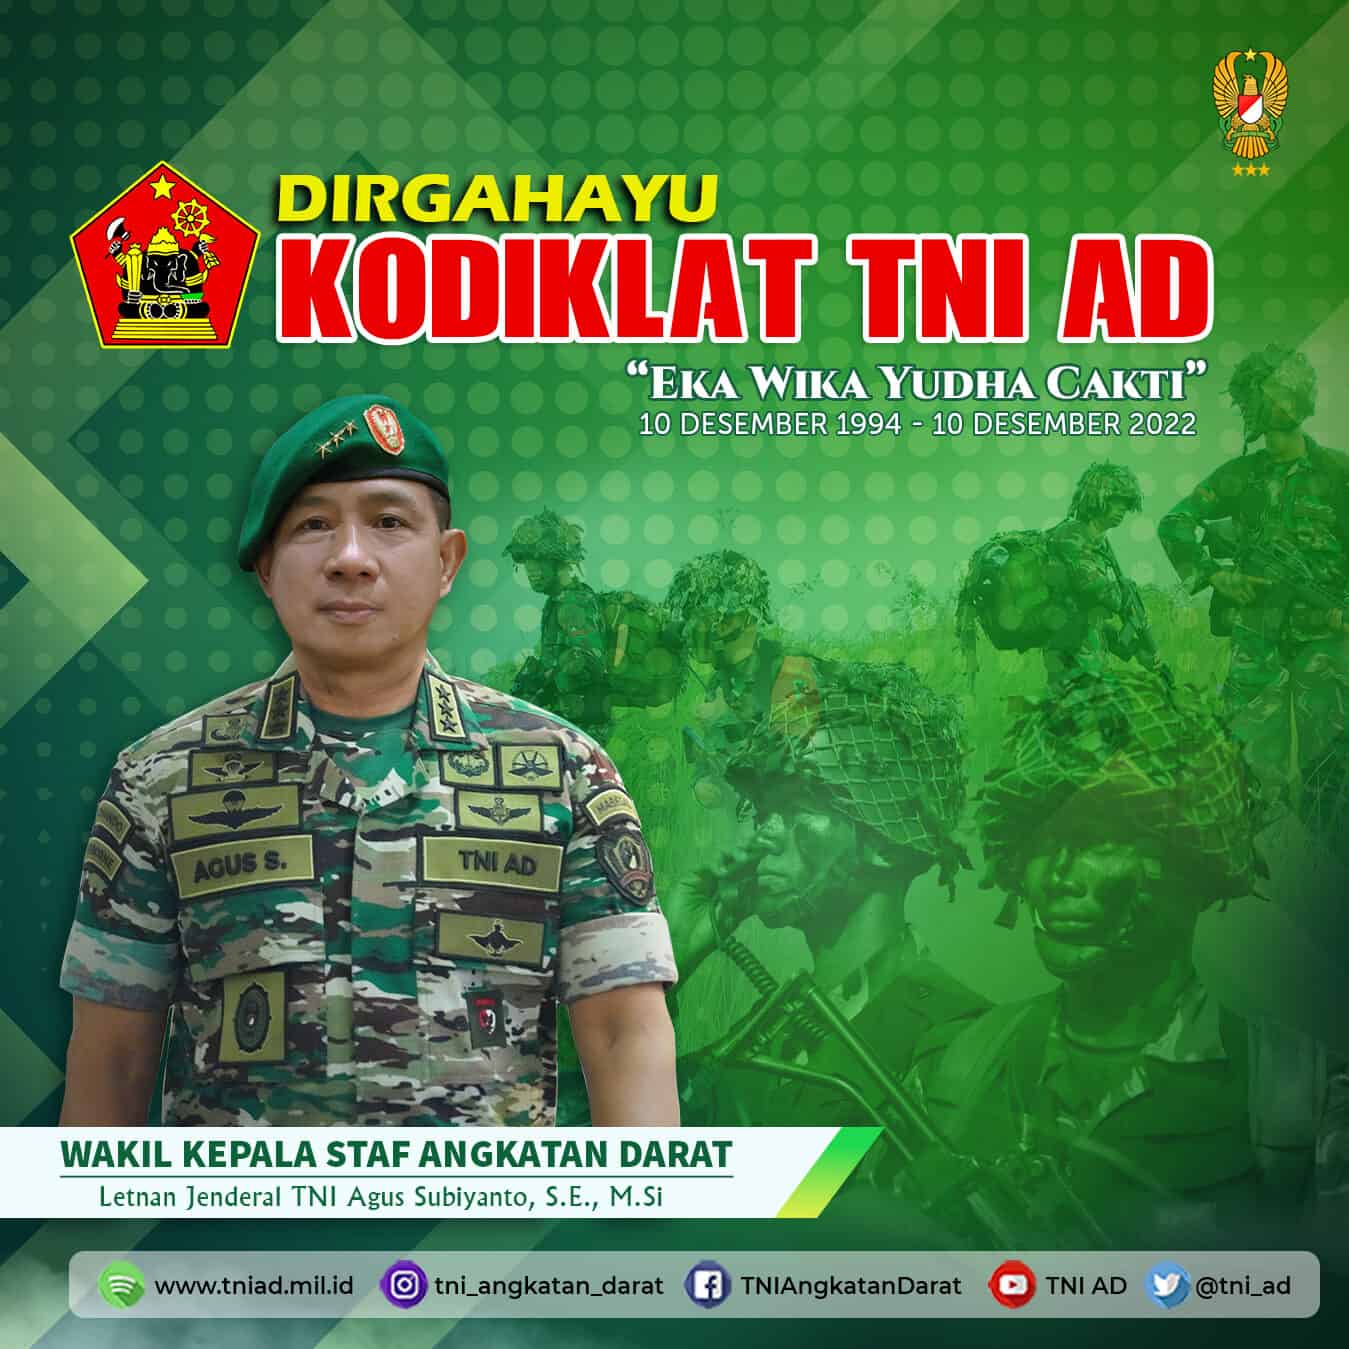 Dirgahayu Kodiklat TNI AD, 10 Desember 1994 – 10 Desember 2022 “Eka Wika Yudha Cakti”